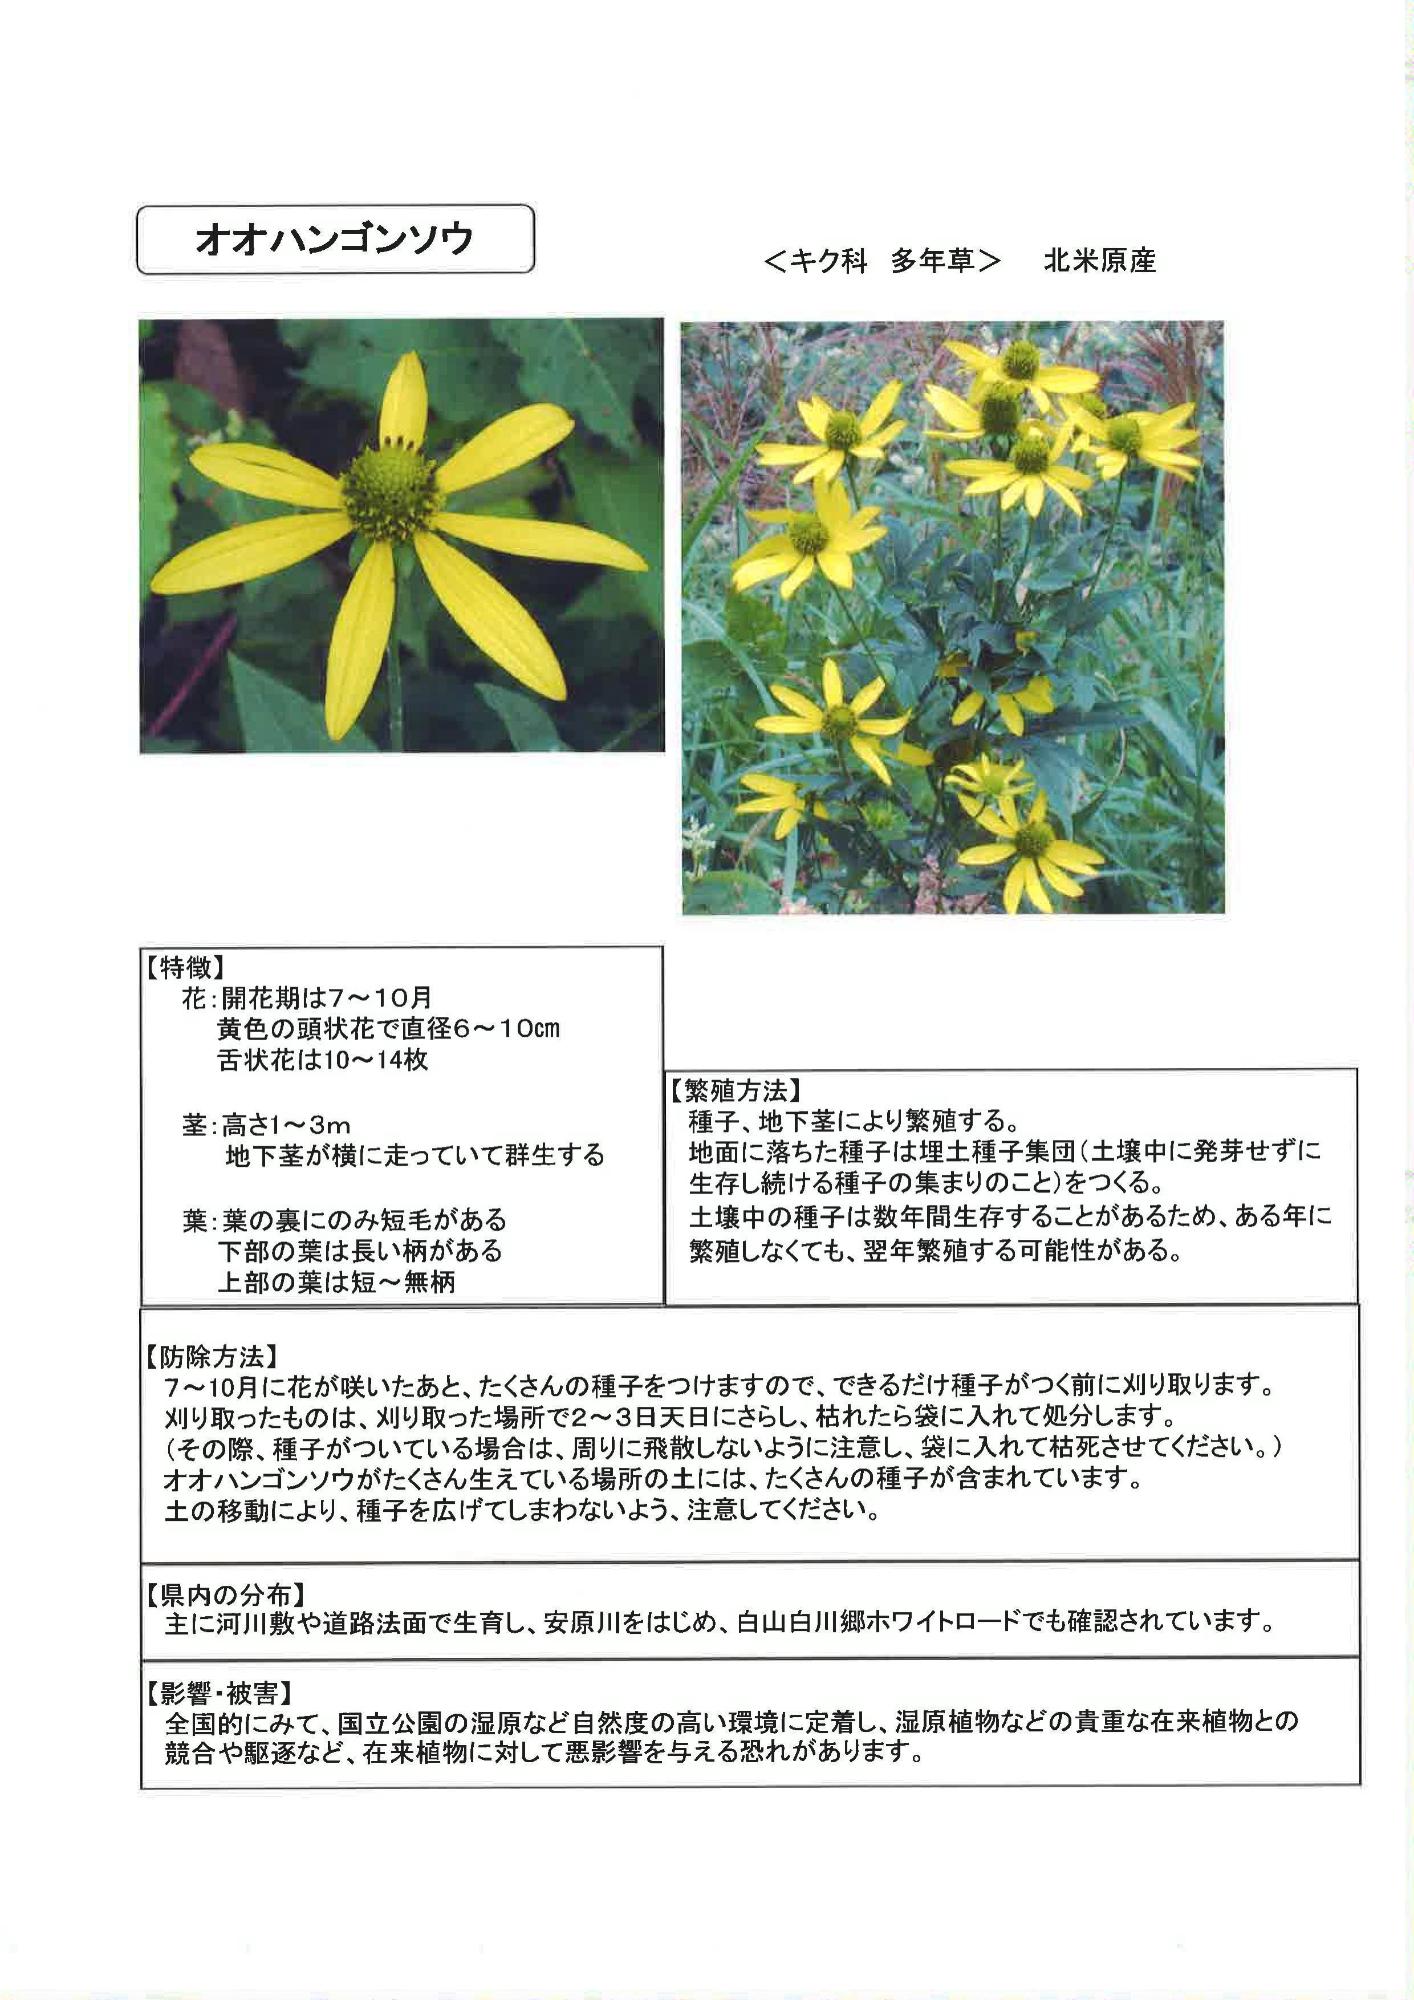 特定外来生物 植物 の駆除について 加賀市